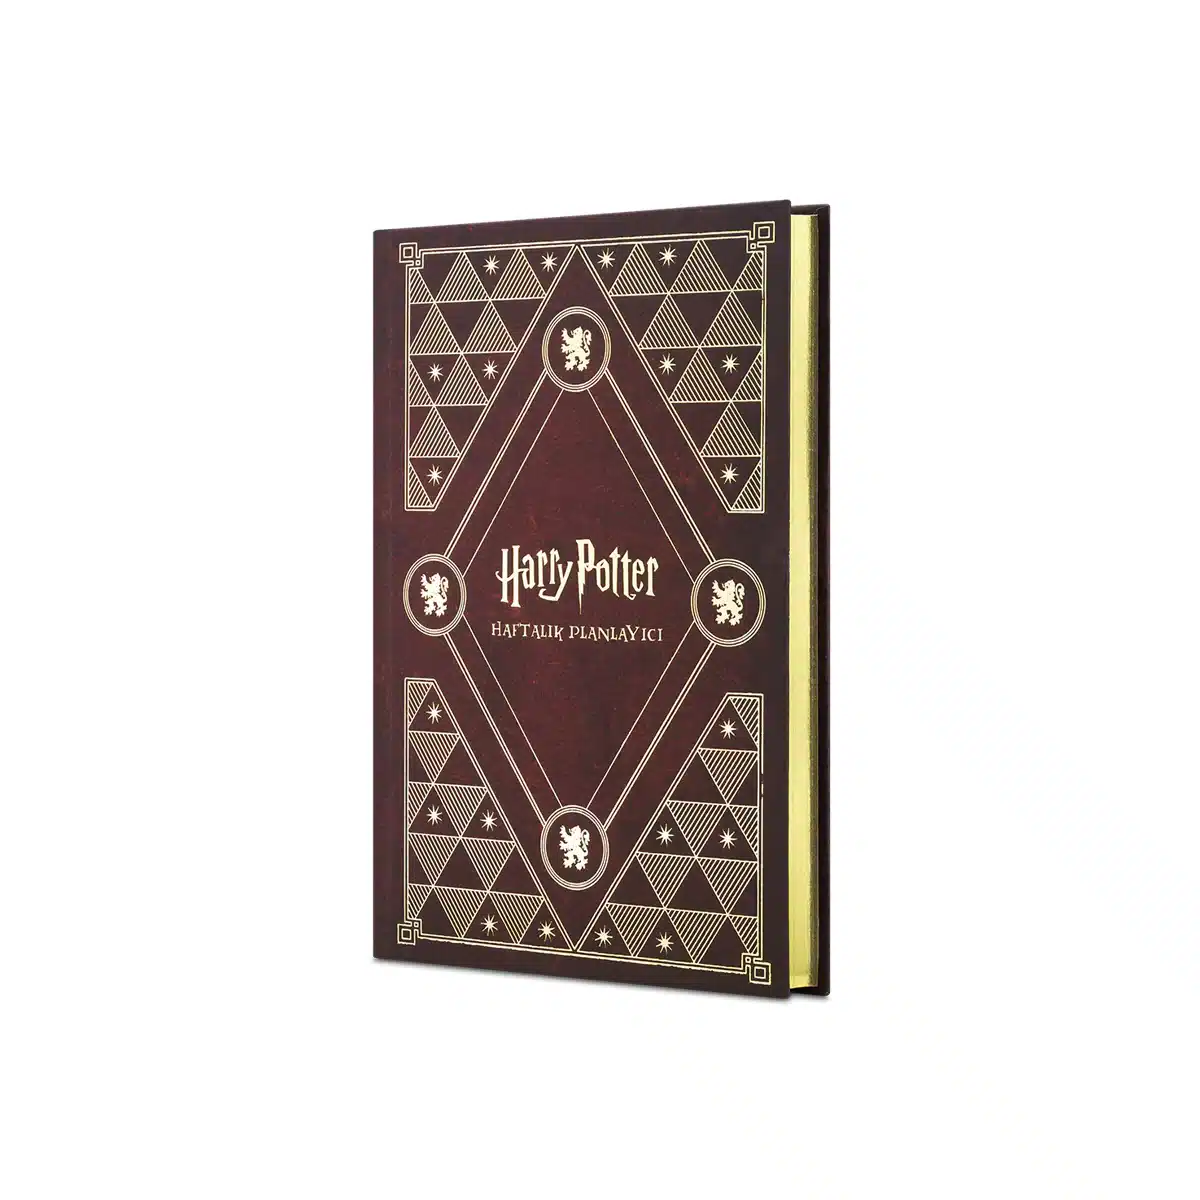 icsayfaAyna 1800x1800 1 Sihir Dükkanı - Tüm Harry Potter Ürünleri